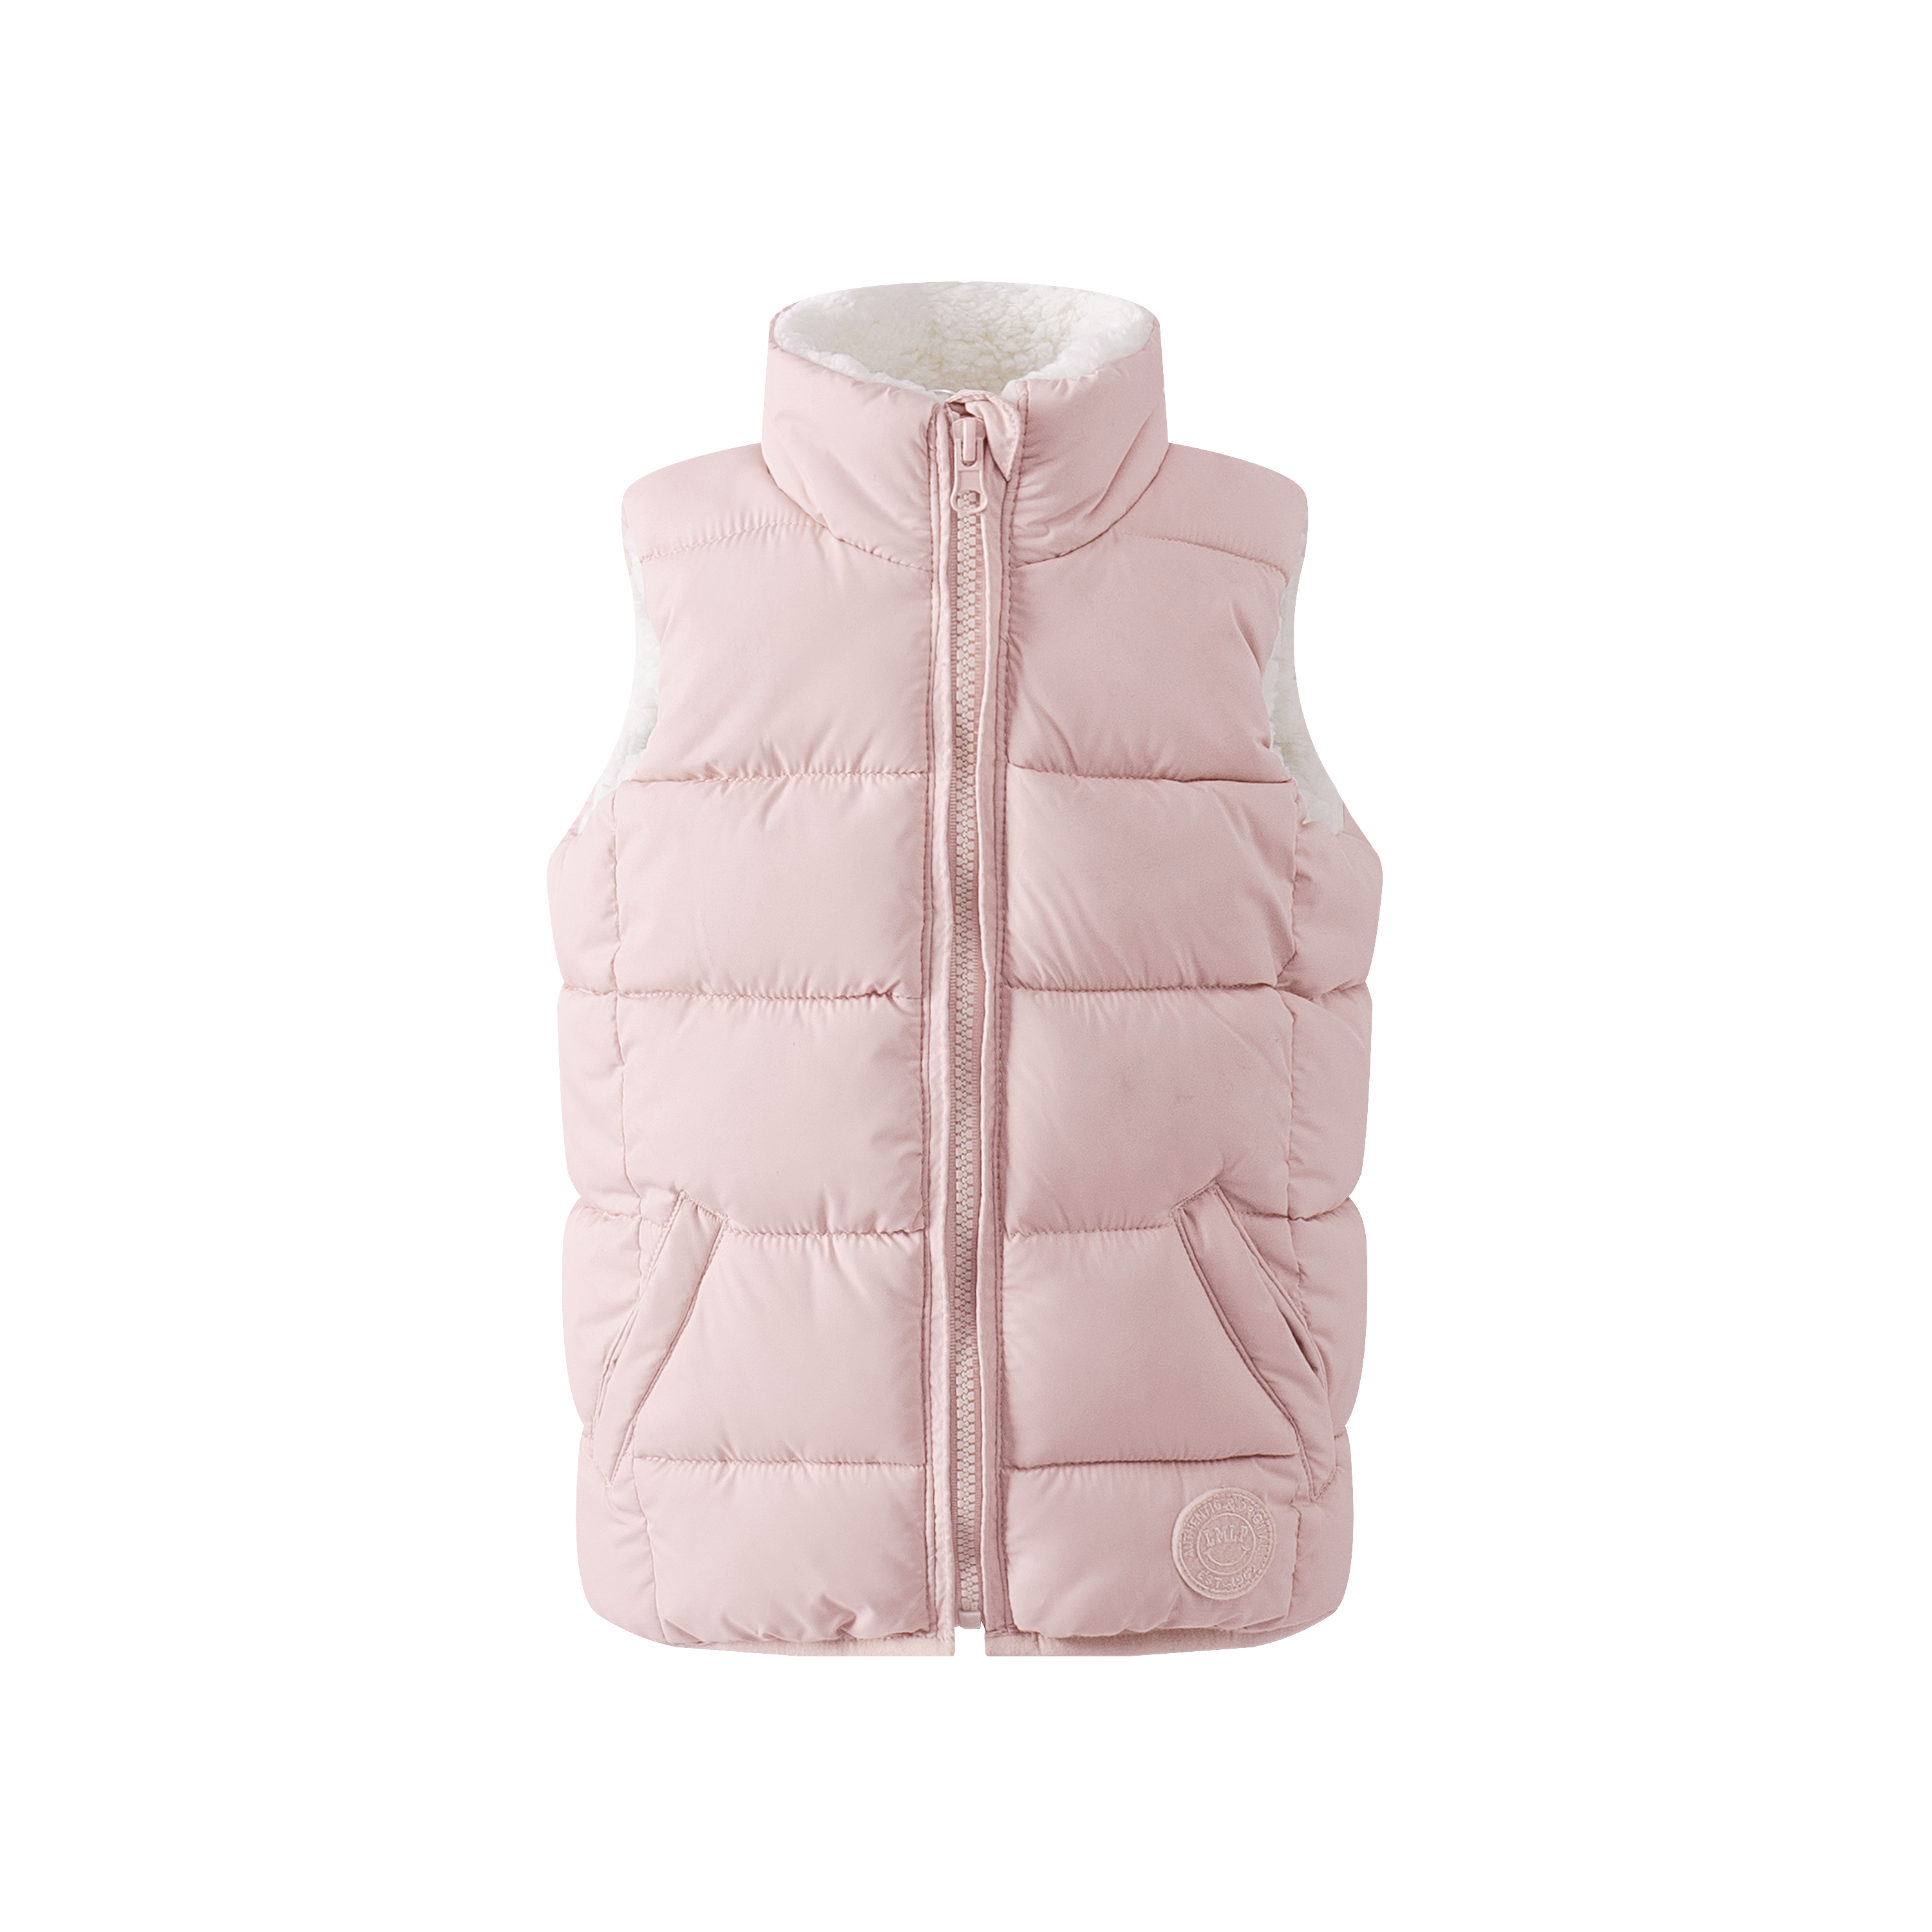 Girls kids Warm Vest Cute Puffer Jackets Lightweight Fall Clothes Winter Outerwear